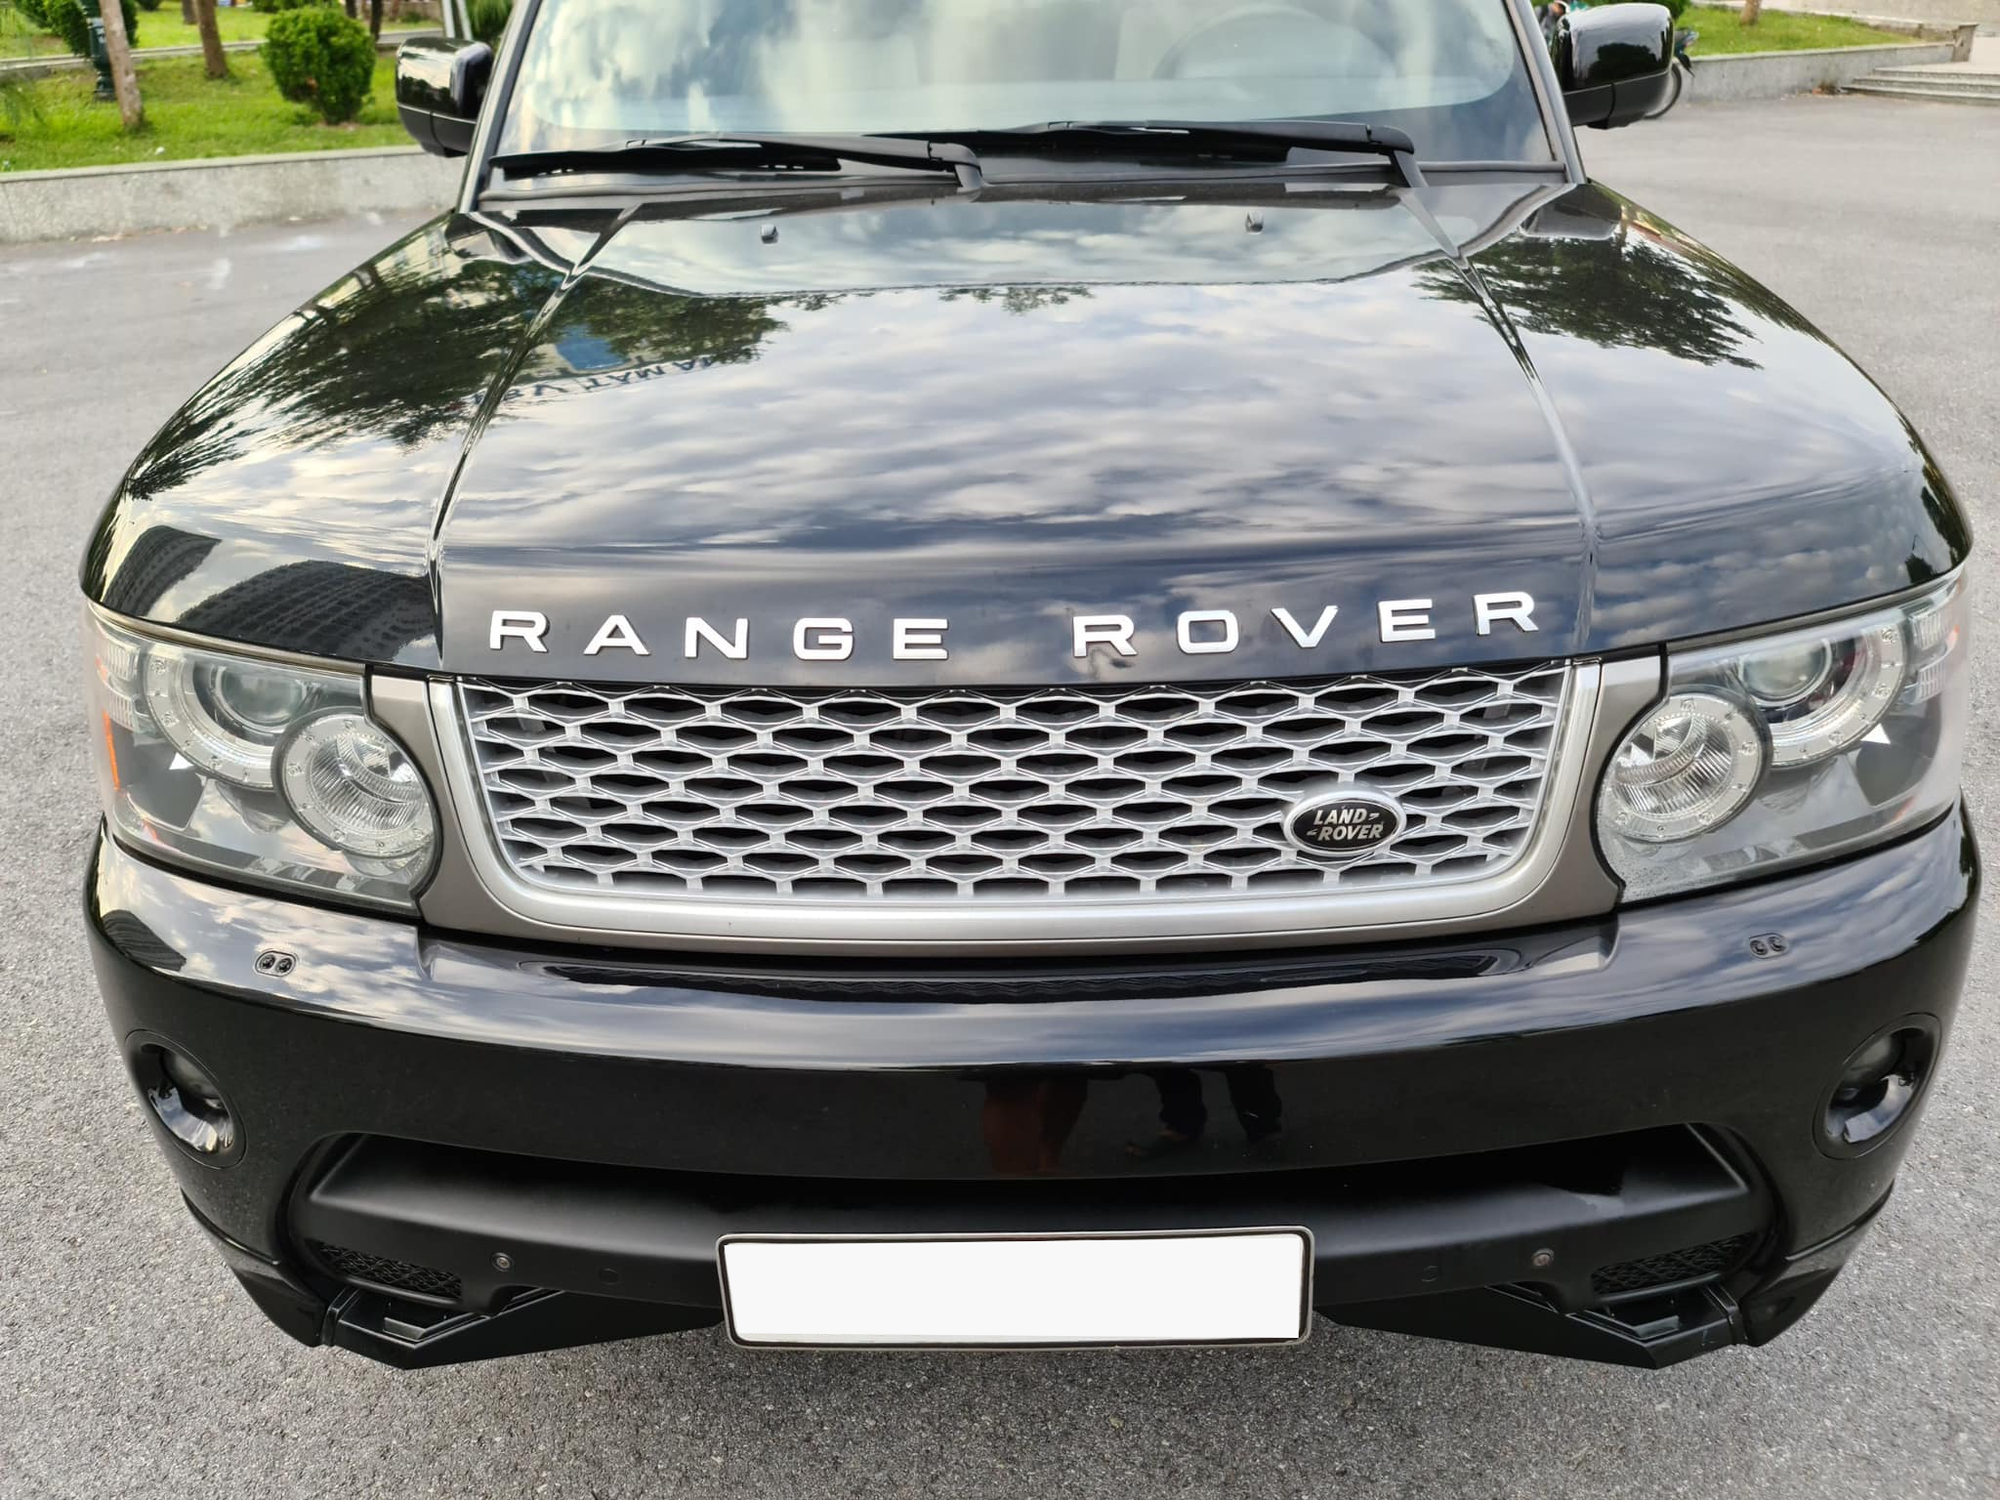 Choáng với xế sang Range Rover cũ giảm giá cả tỷ đồng, rẻ ngang Kia Sorento đời mới ảnh 1